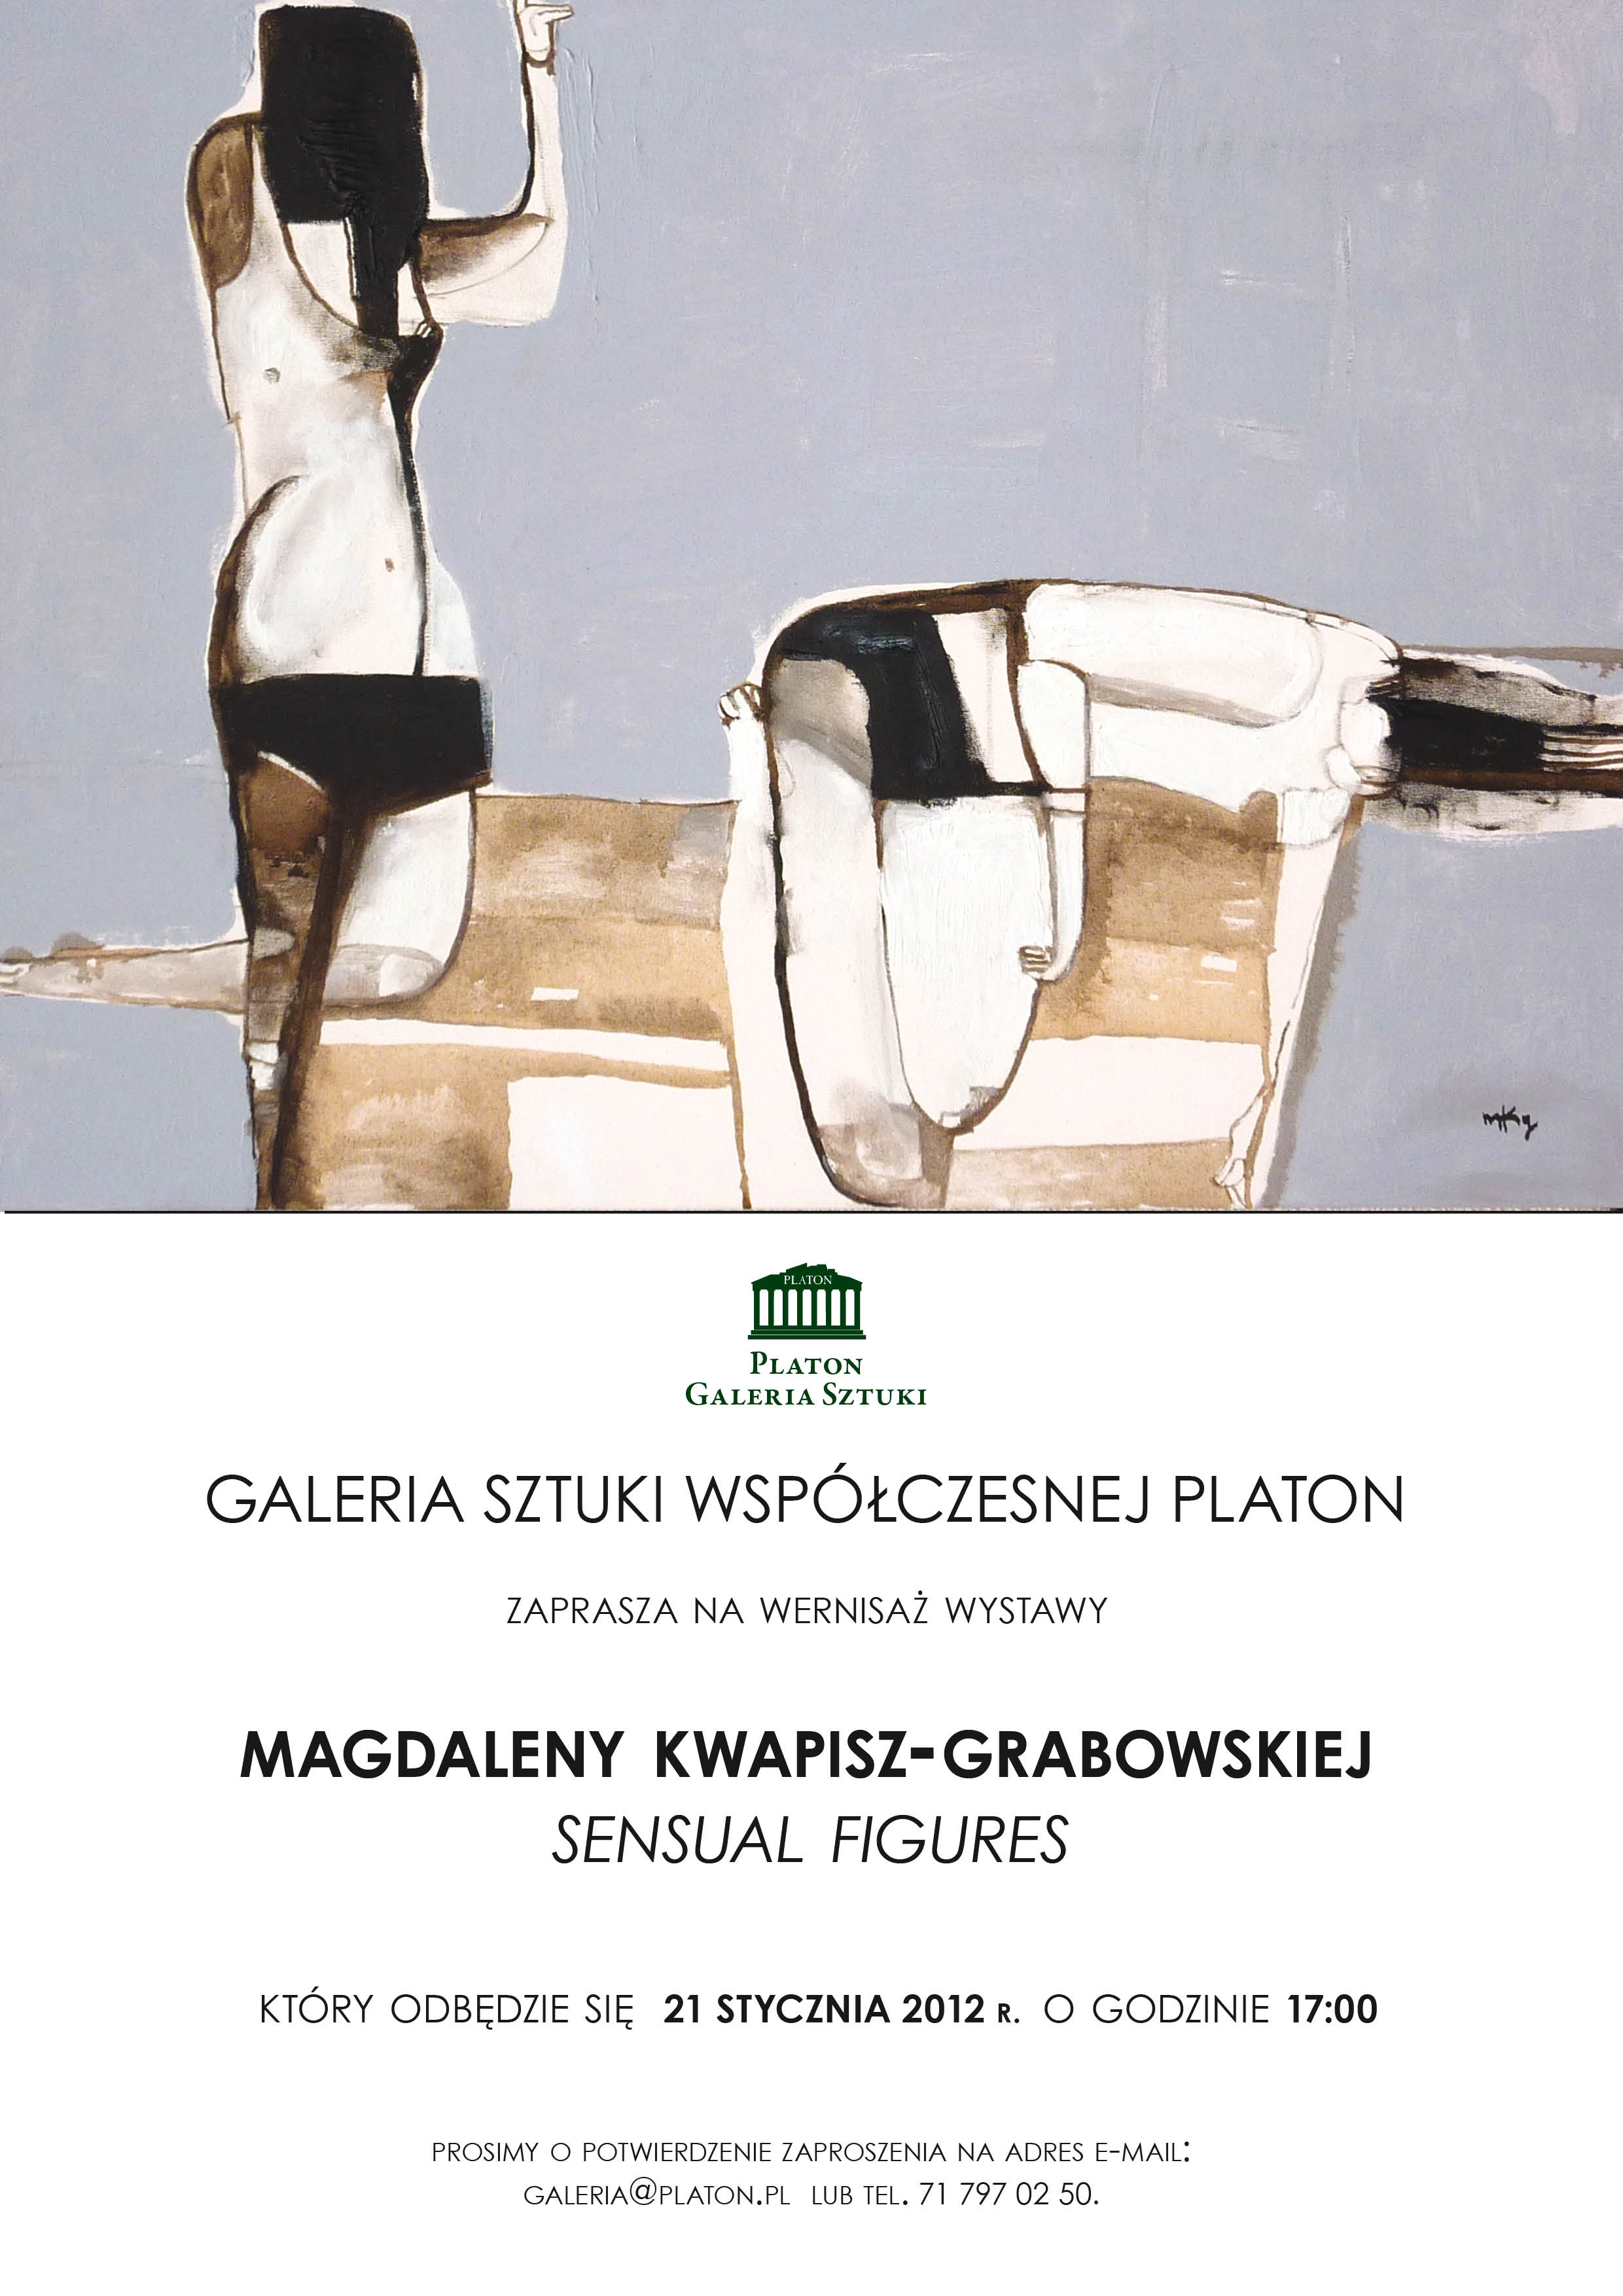 Zaproszenie na wystawę Magdaleny Kwapisz- Grabowskiej (źródło: materiały prasowe Galerii Platon)